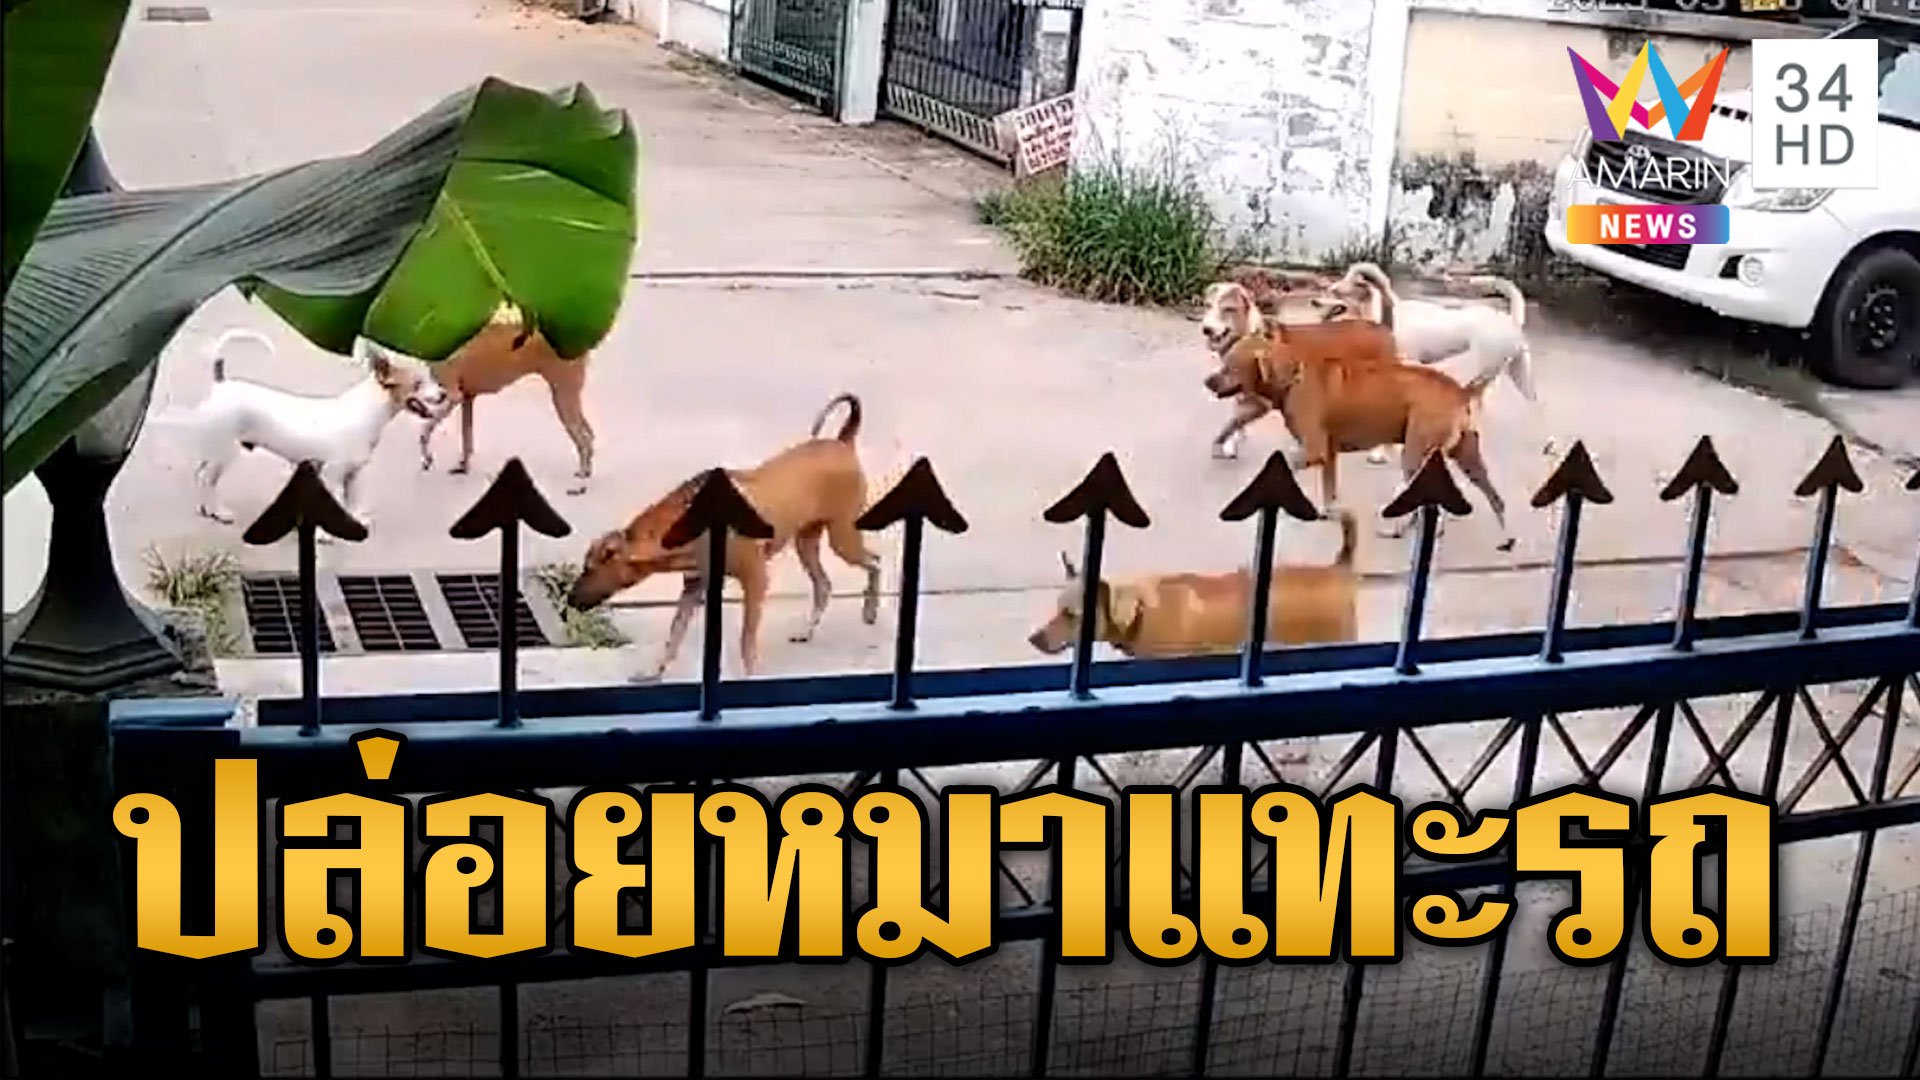 ชาวบ้านร้อง เทศกิจปล่อยหมานับสิบ กัดแทะรถเดือดร้อนทั้งซอย | ข่าวเที่ยงอมรินทร์ | 8 ก.ค. 66 | AMARIN TVHD34